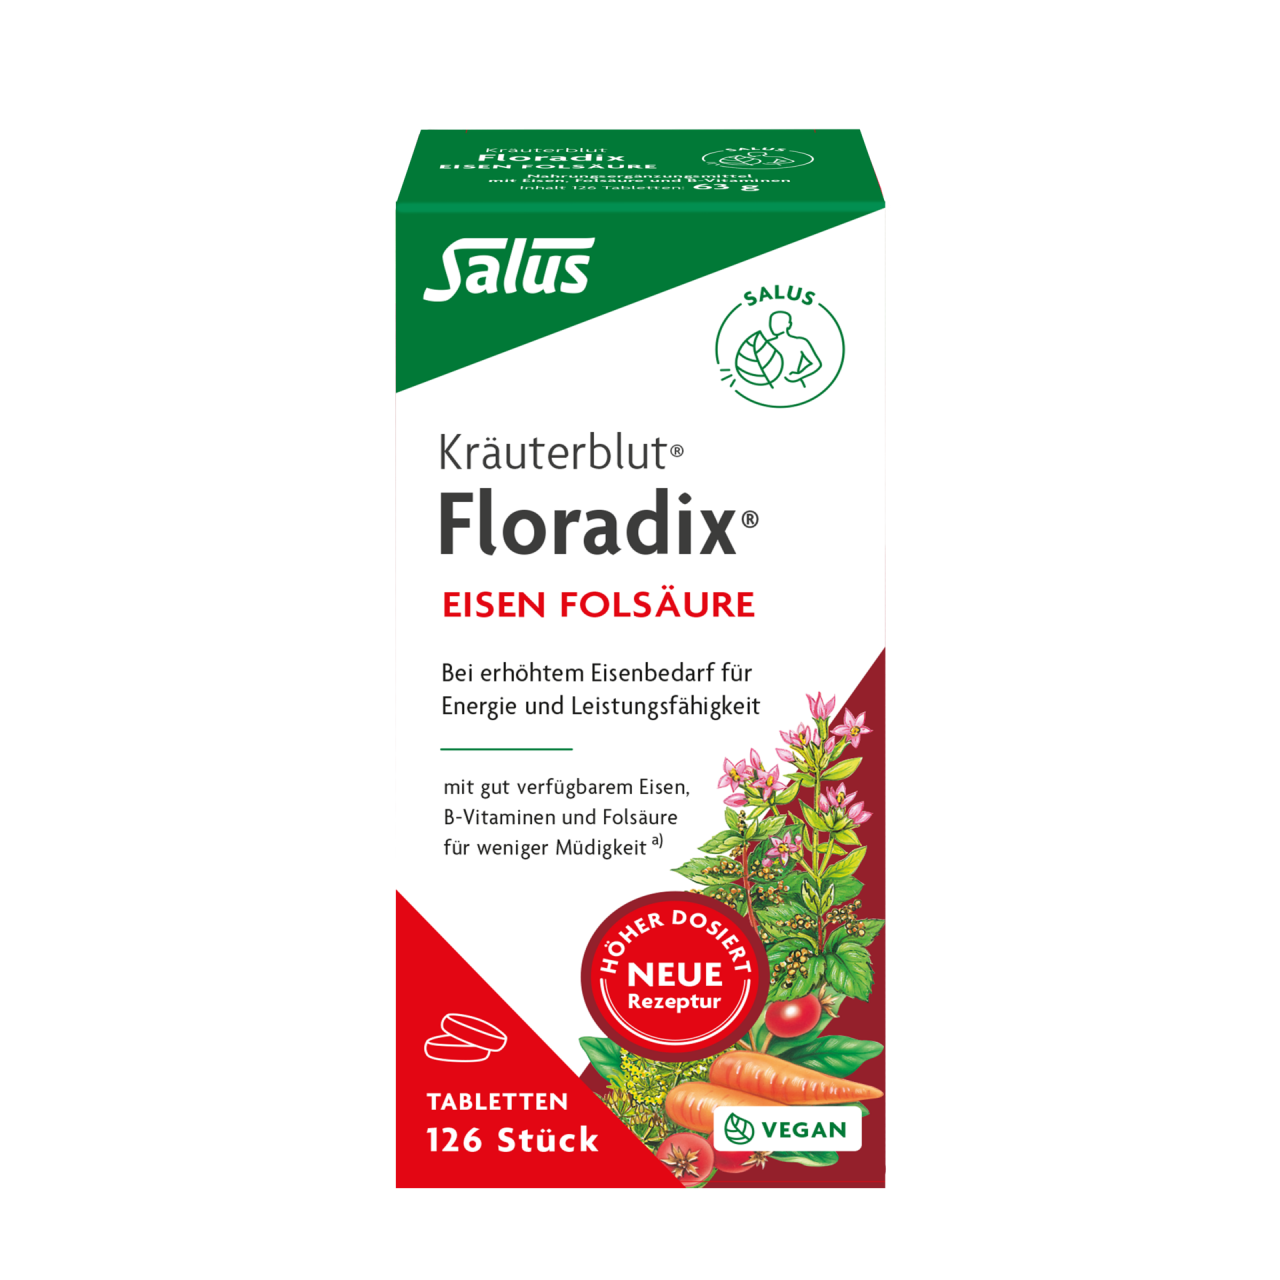 Floradix Eisen Folsäure Tabletten von Salus